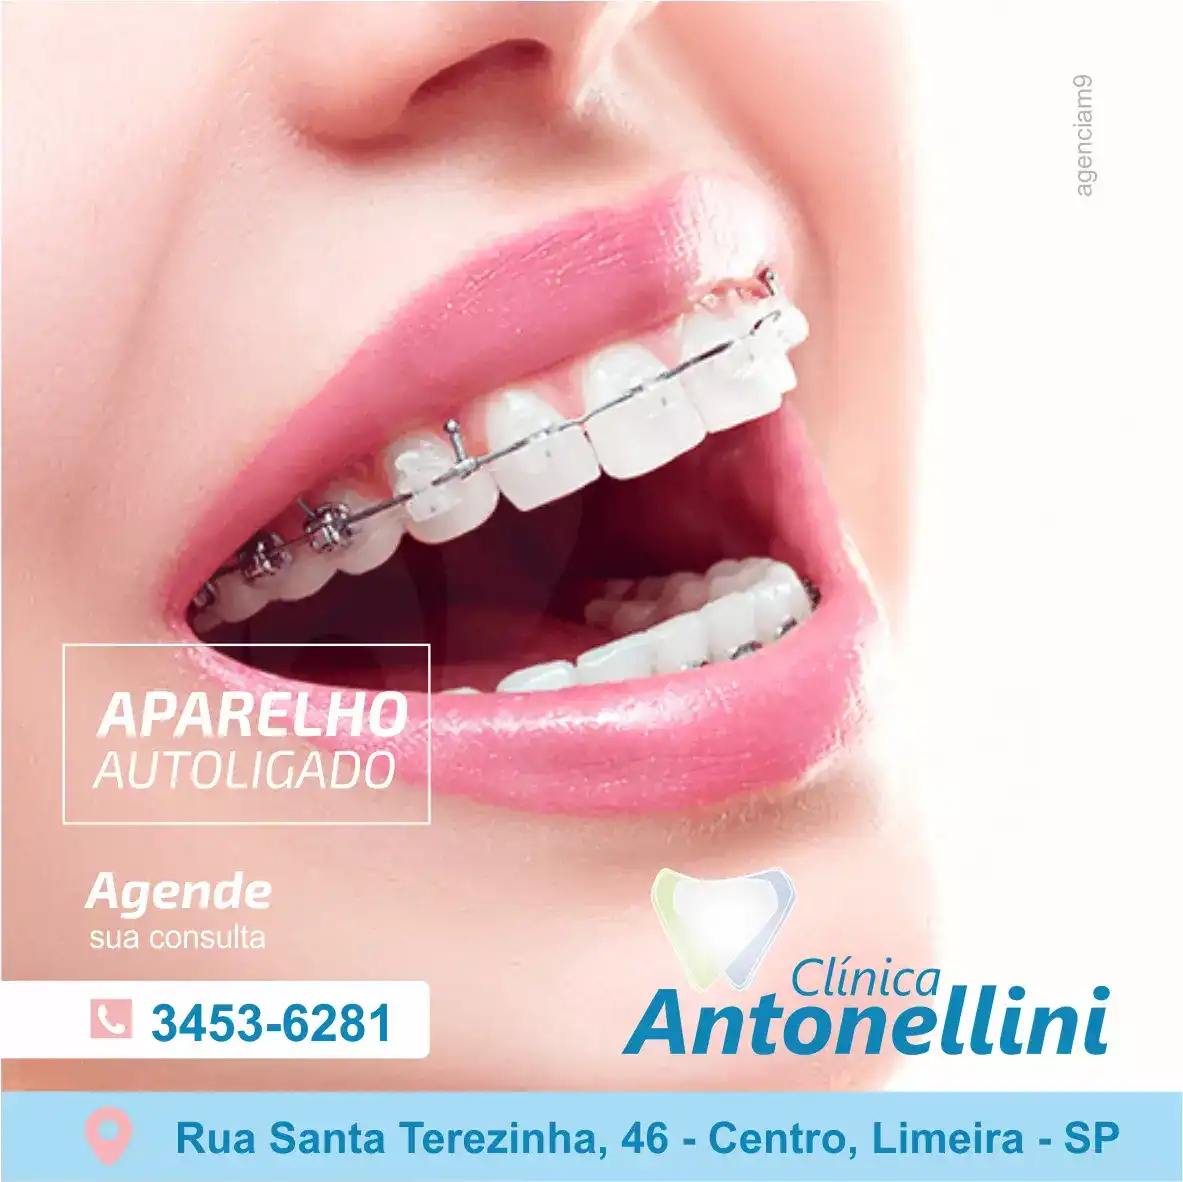 
Propaganda sobre Aparelho Autoligado para Dentista



